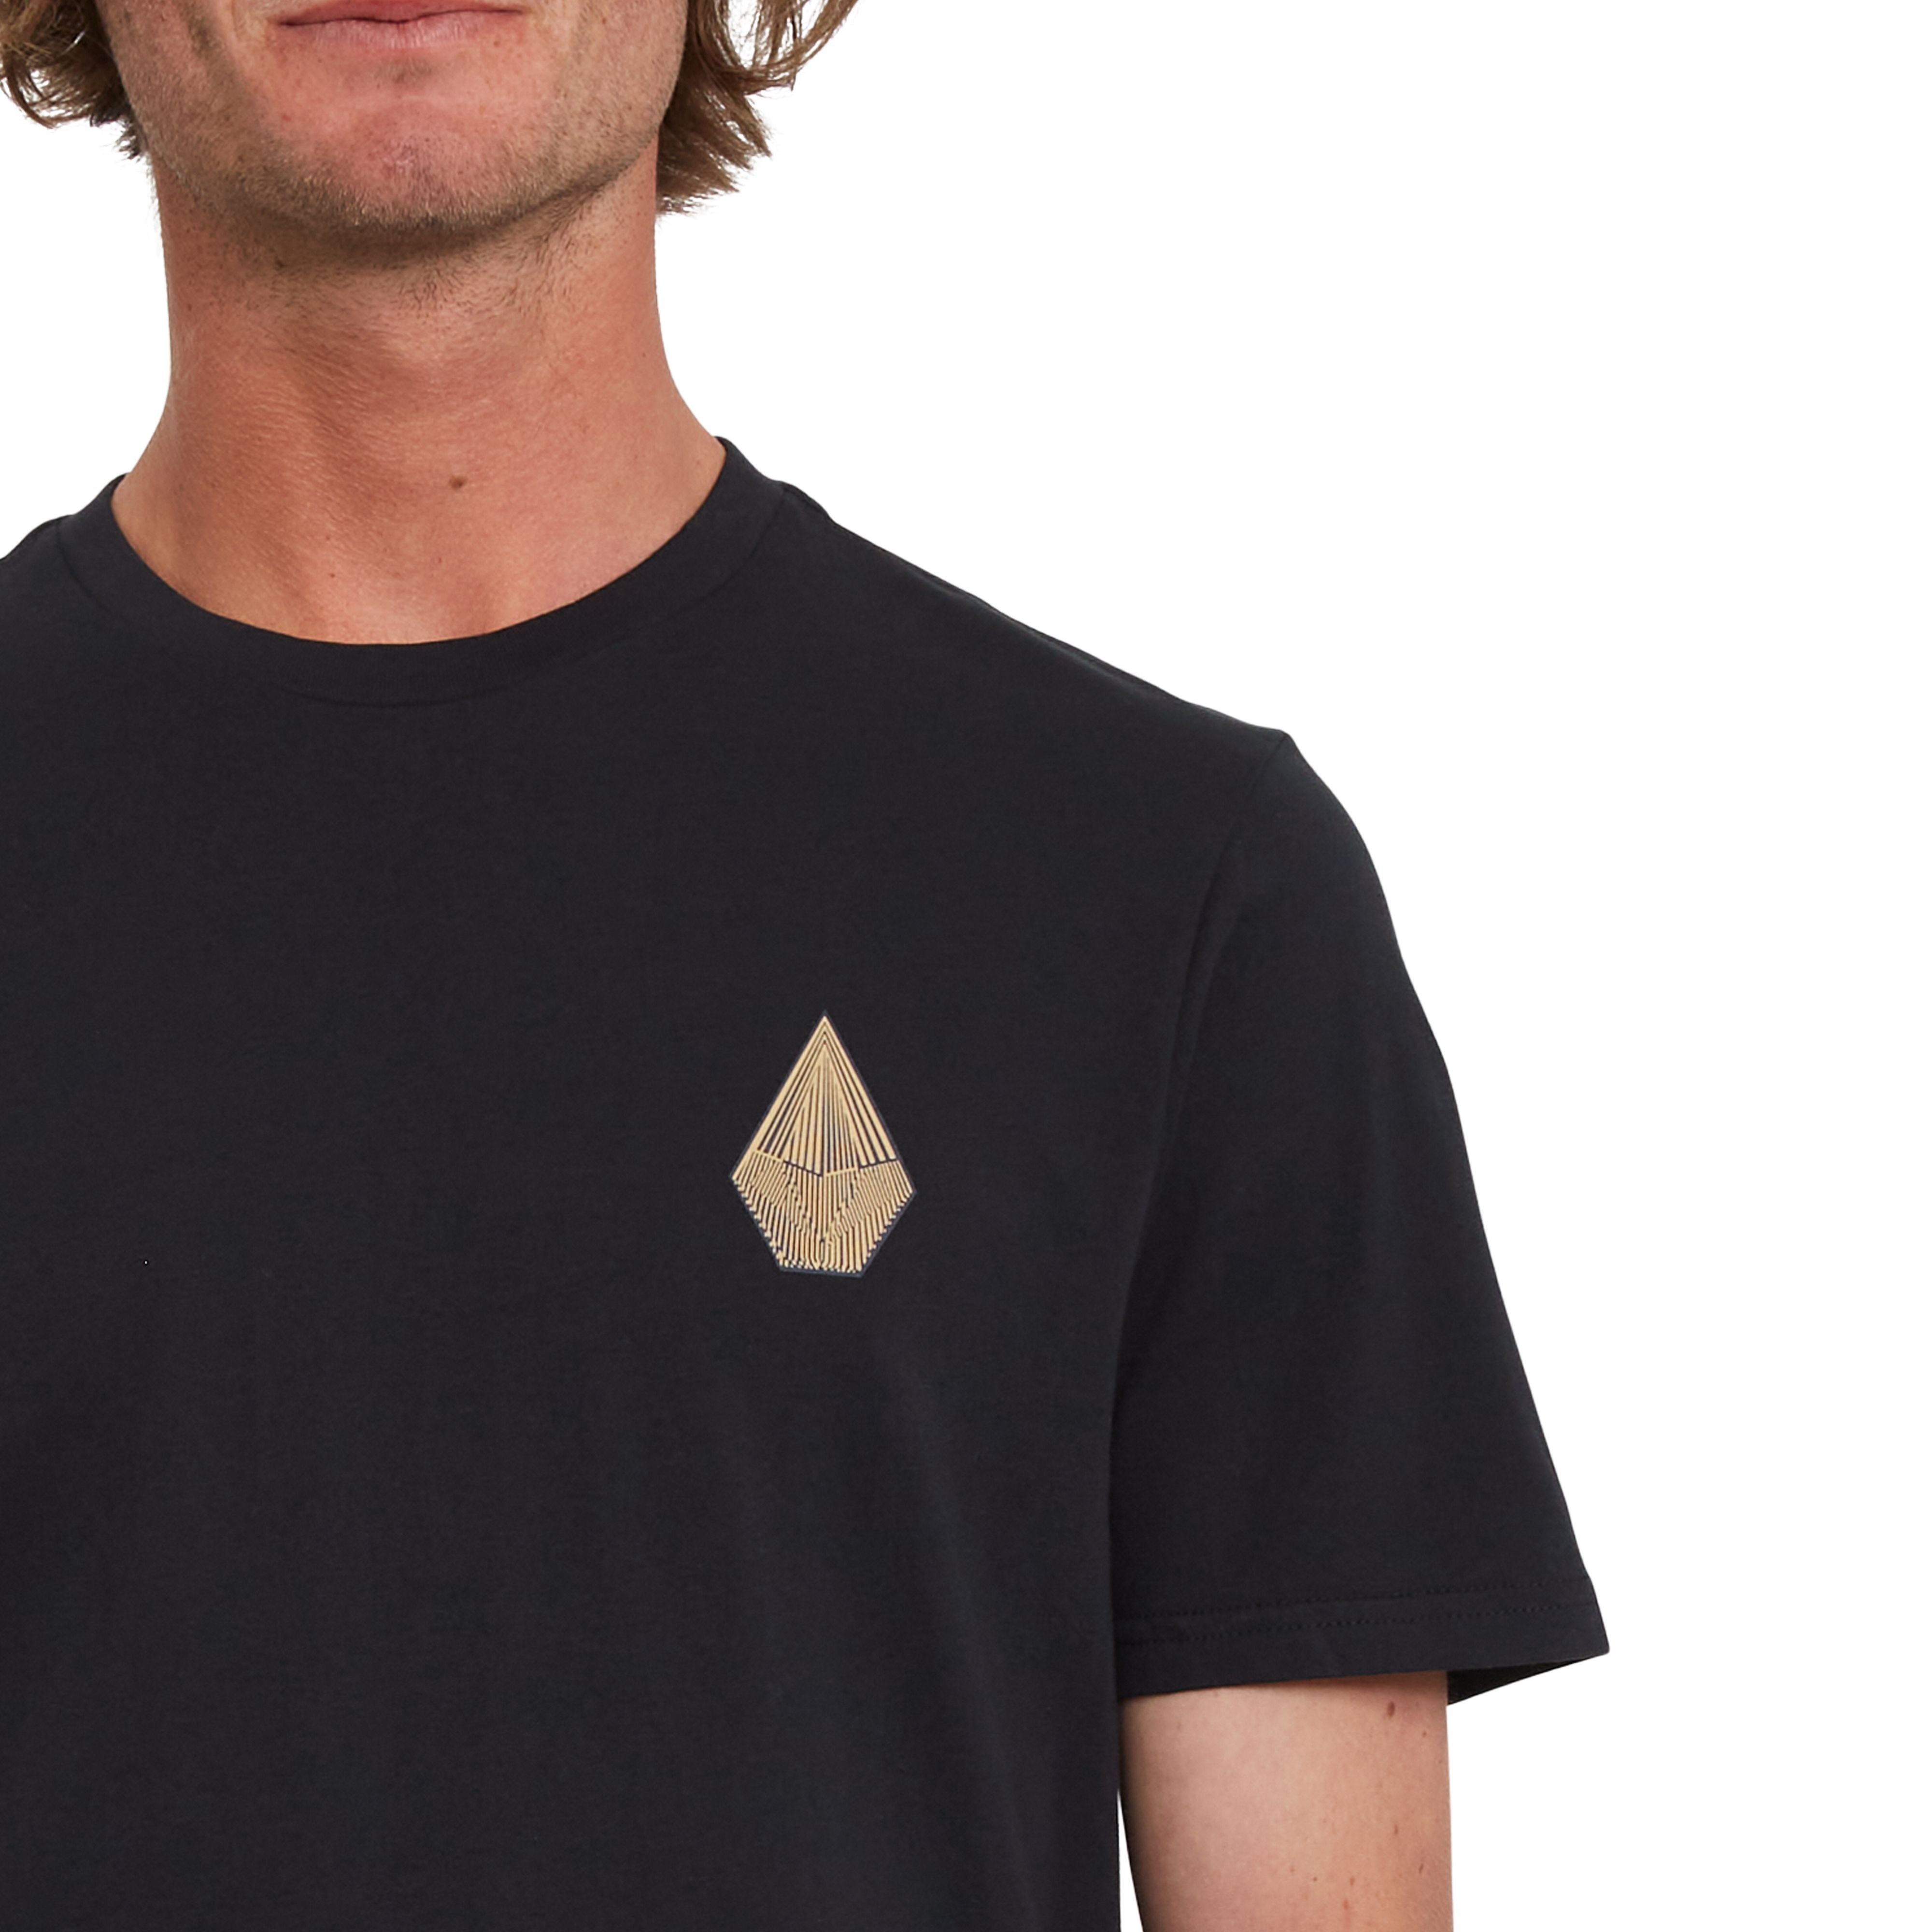 Volcom T-Shirt in Schwarz von Thomas Cooper Designt aus 100% Bio Baumwolle und Handsiebdruck auf Brust und Rücken.